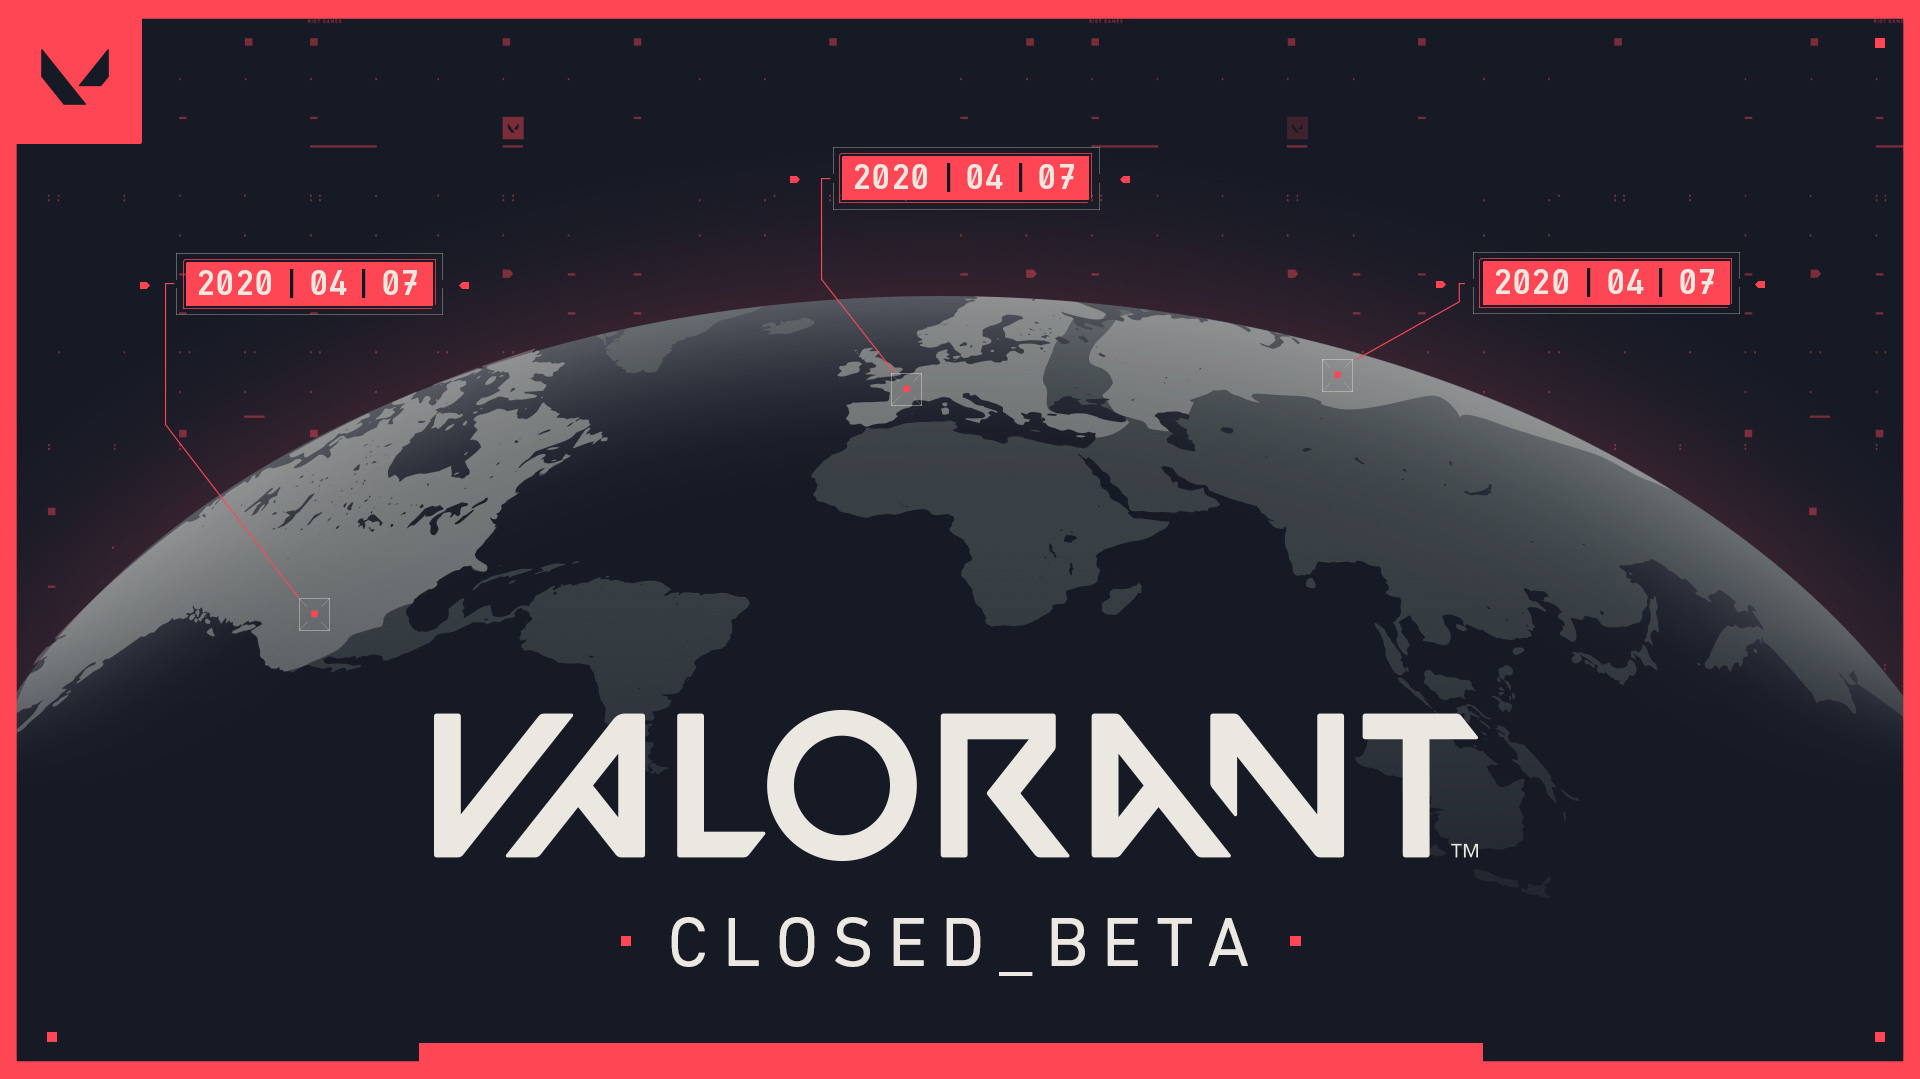 Tài khoản beta của Valorant đang được rao bán với giá hàng chục triệu đồng trên mạng